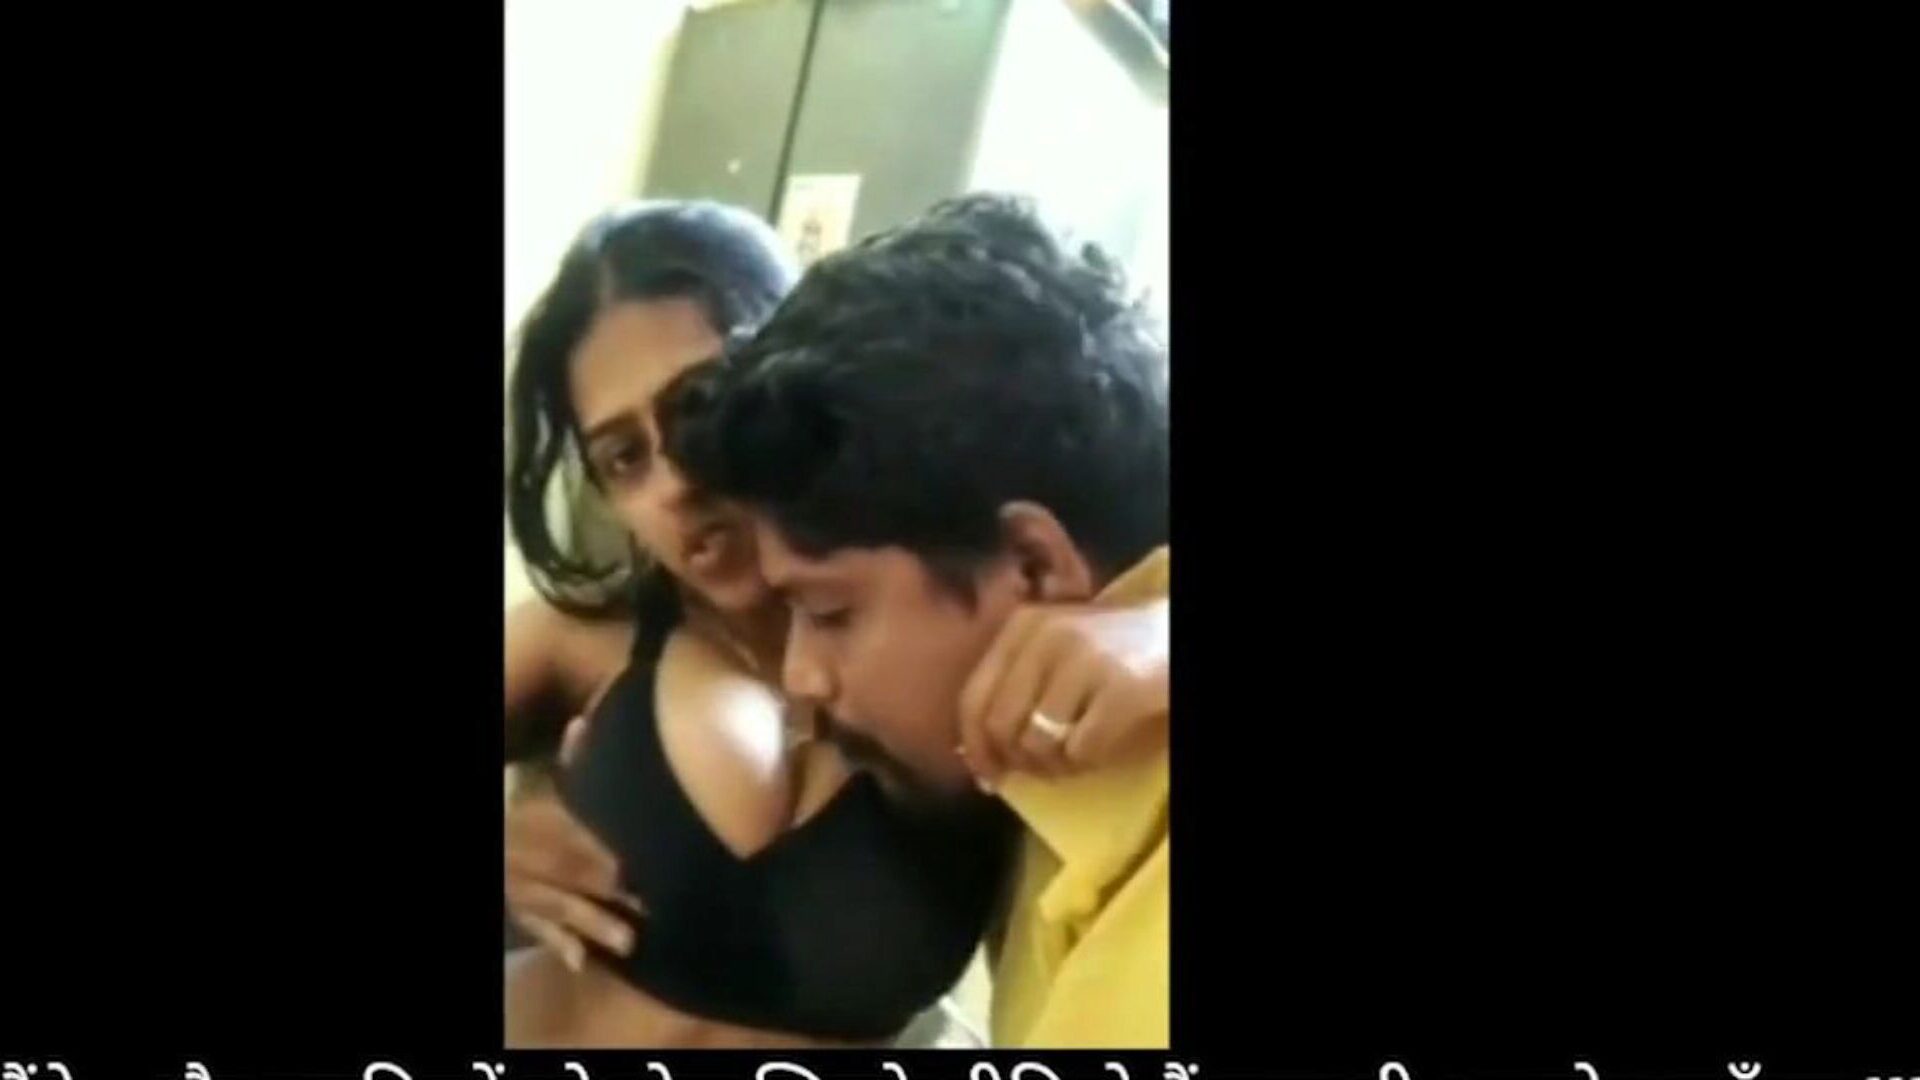 bhabhi devar diversão de sexo em casa durante o bloqueio: hd pornô grátis fa assistir bhabhi devar diversão de sexo em casa durante o episódio de bloqueio no xhamster - o arquivo final de vídeos indianos de pornografia em hd xxx de pornografia grátis para todos.